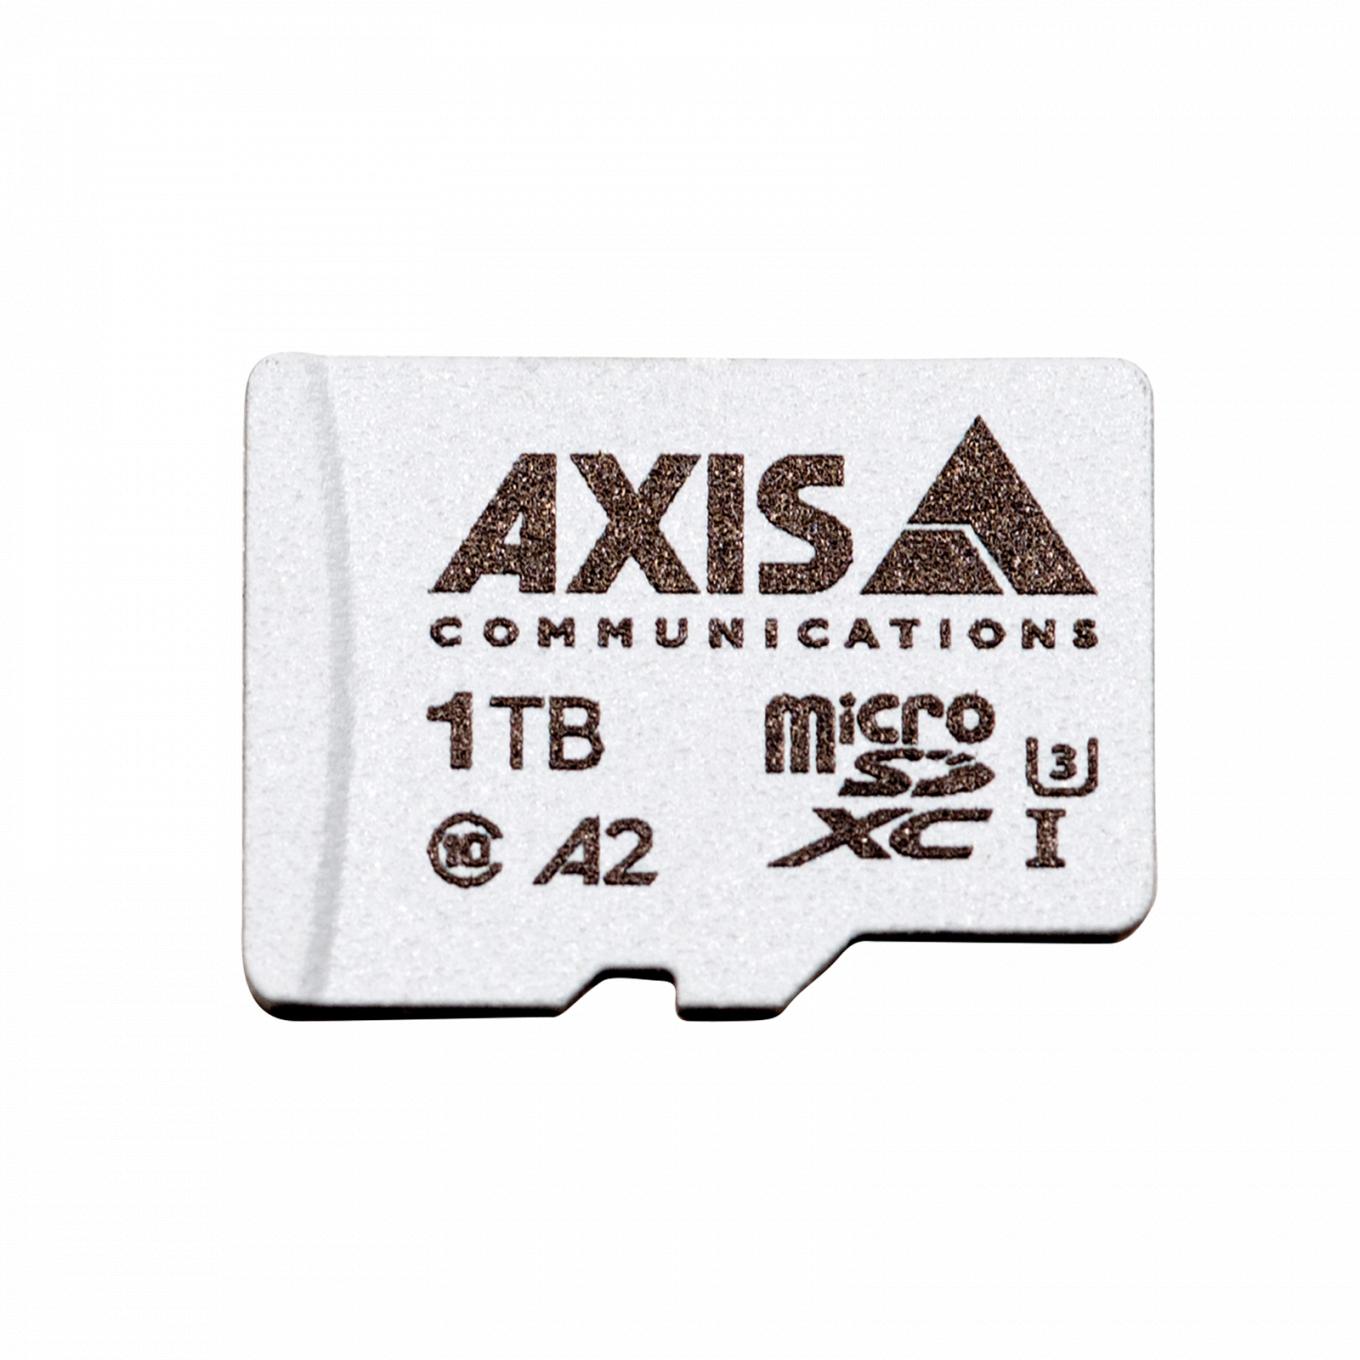 AXIS Surveillance Card 1 TB